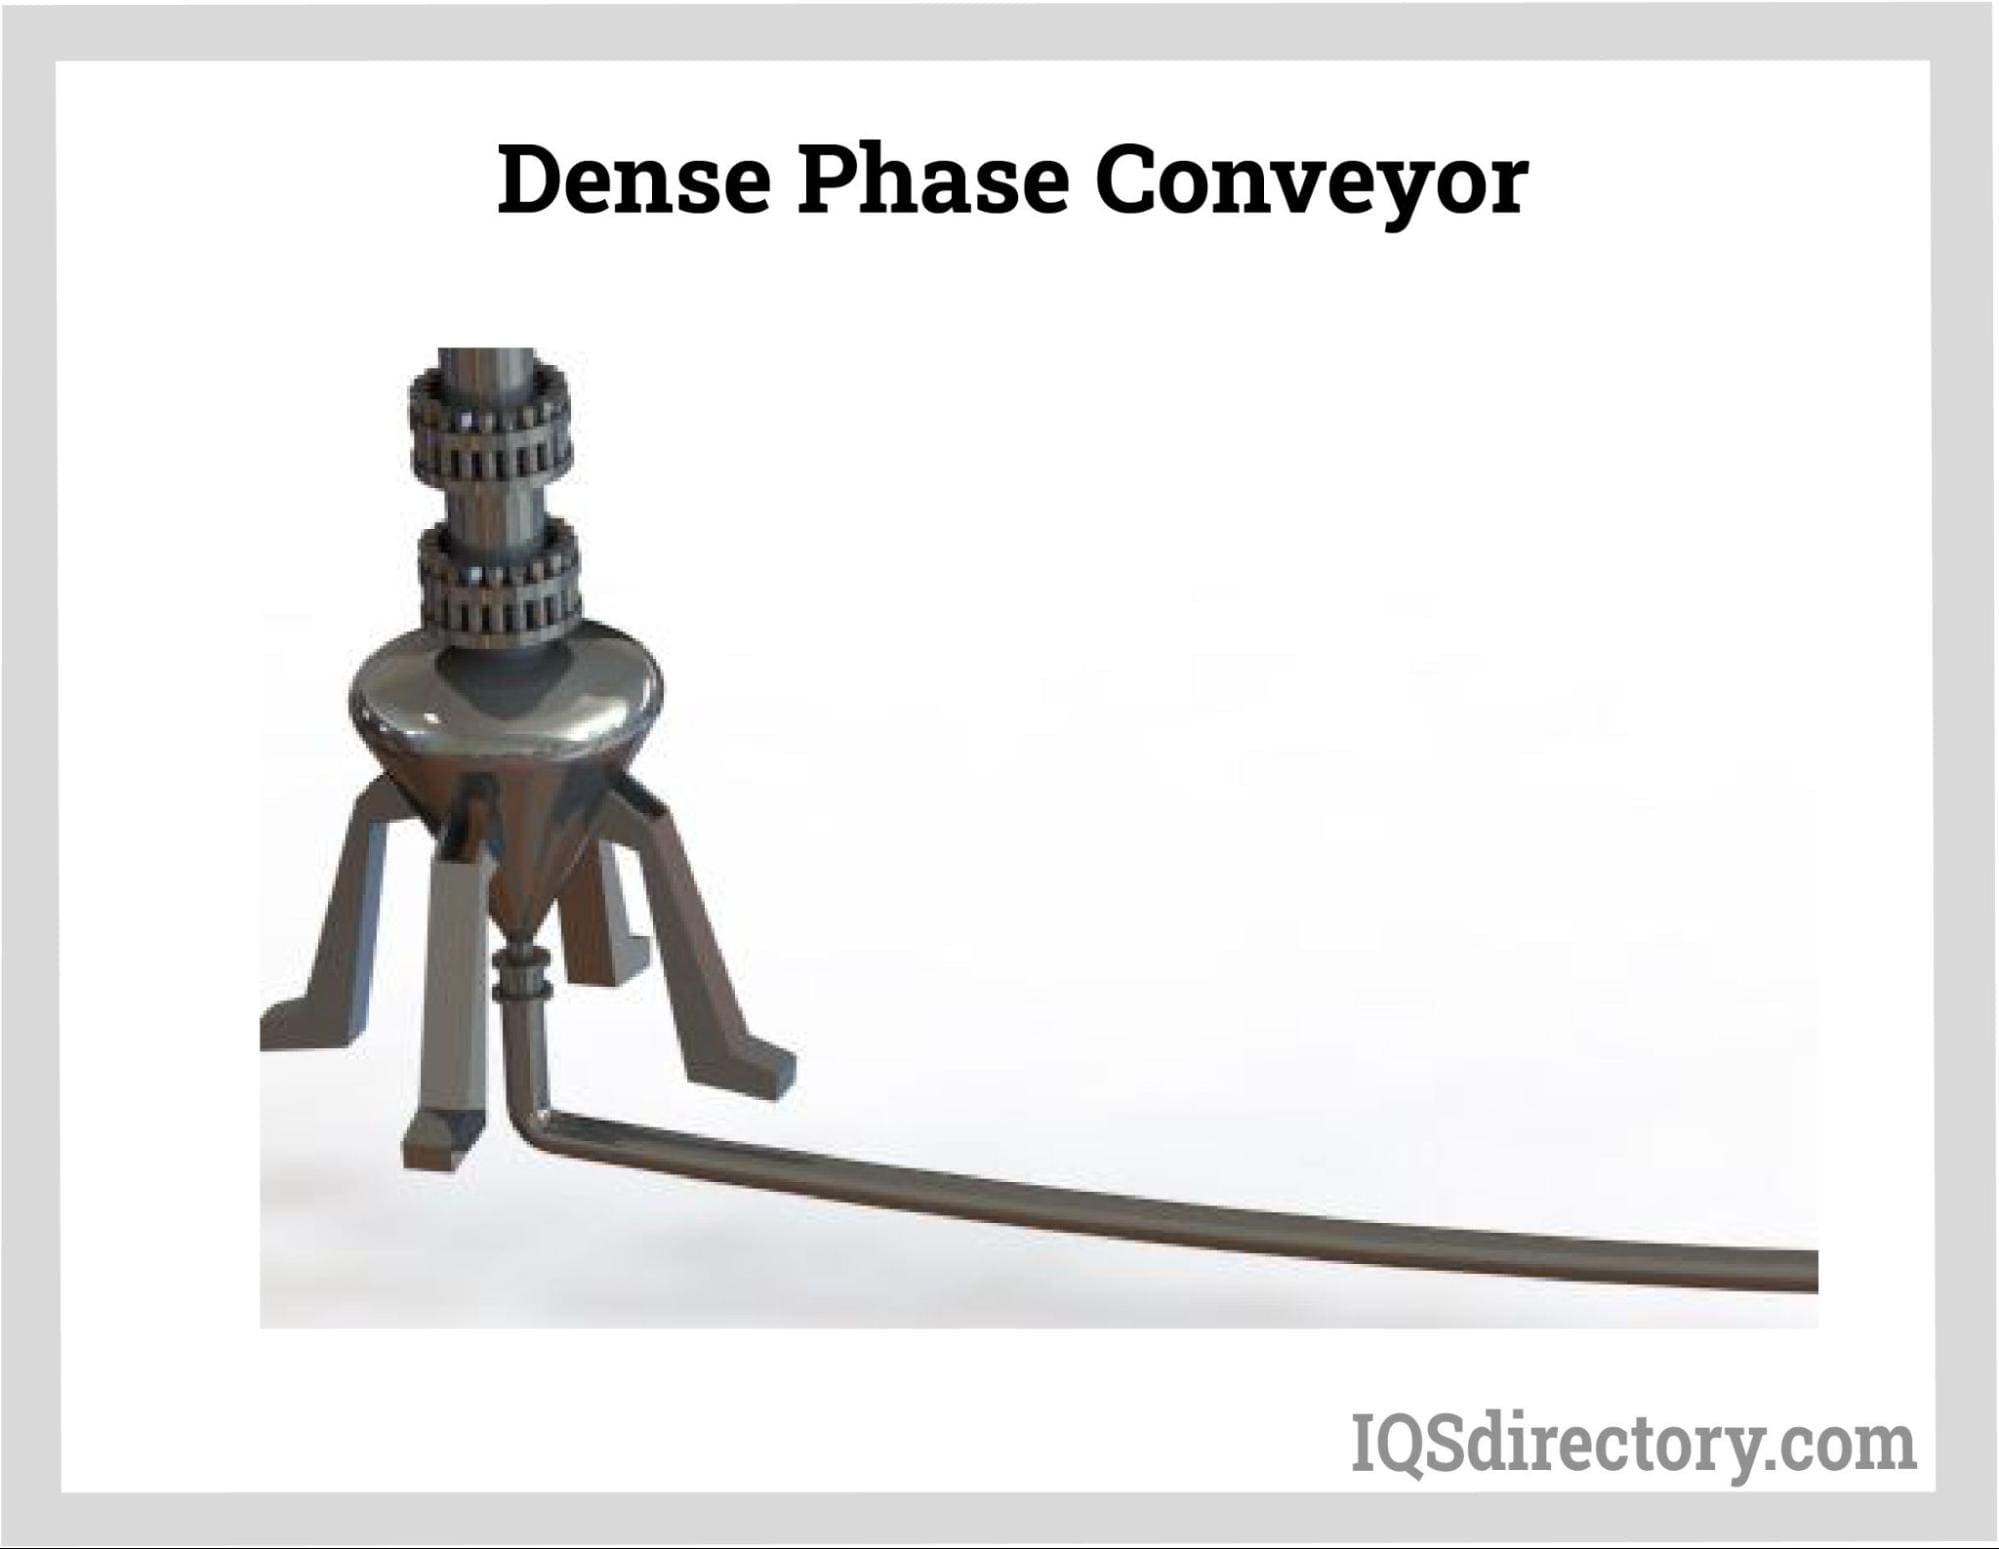 Dense Phase Conveyor